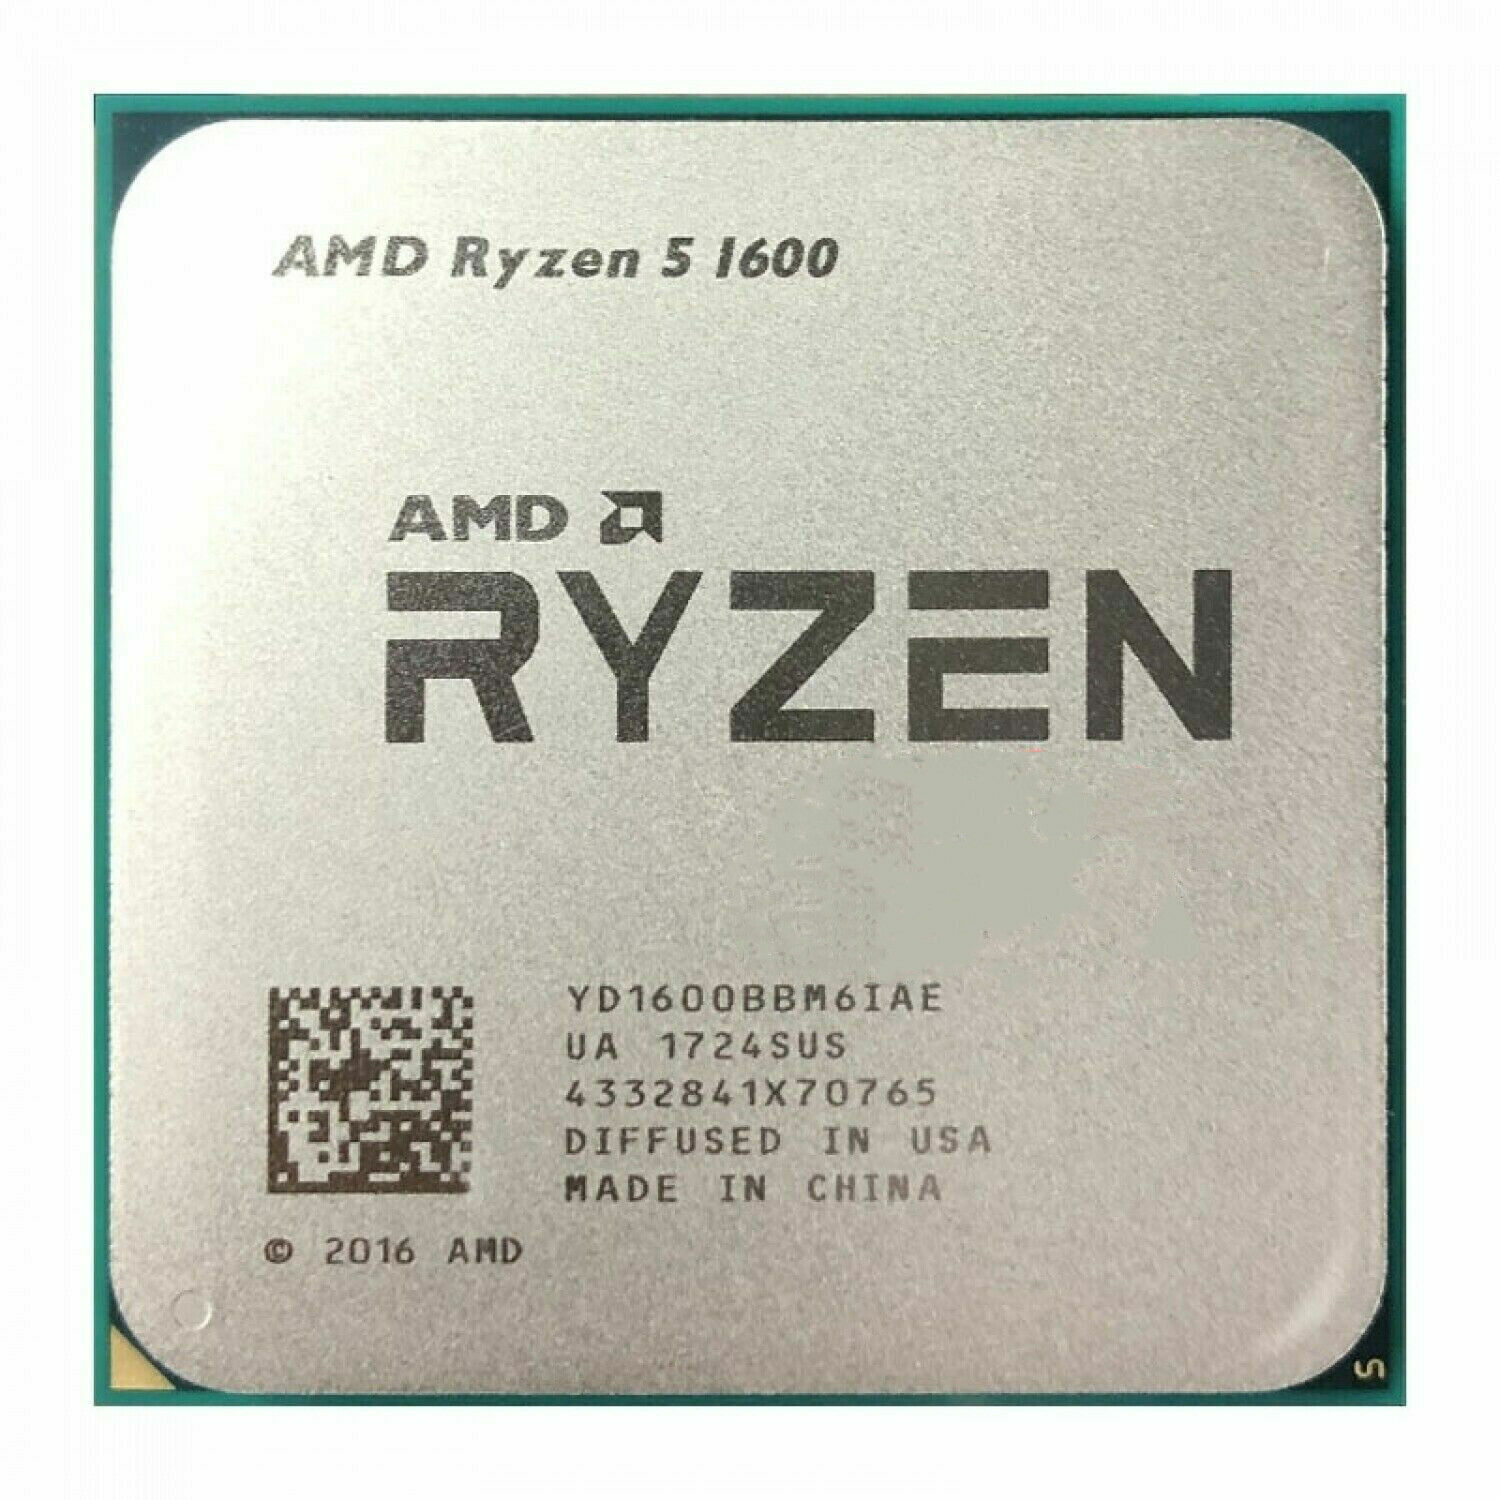 AMD R5 Ryzen R5 1600 3.2 GHz YD1600BBM6IAE 6-Core Socket AM4 65W CPU Processor